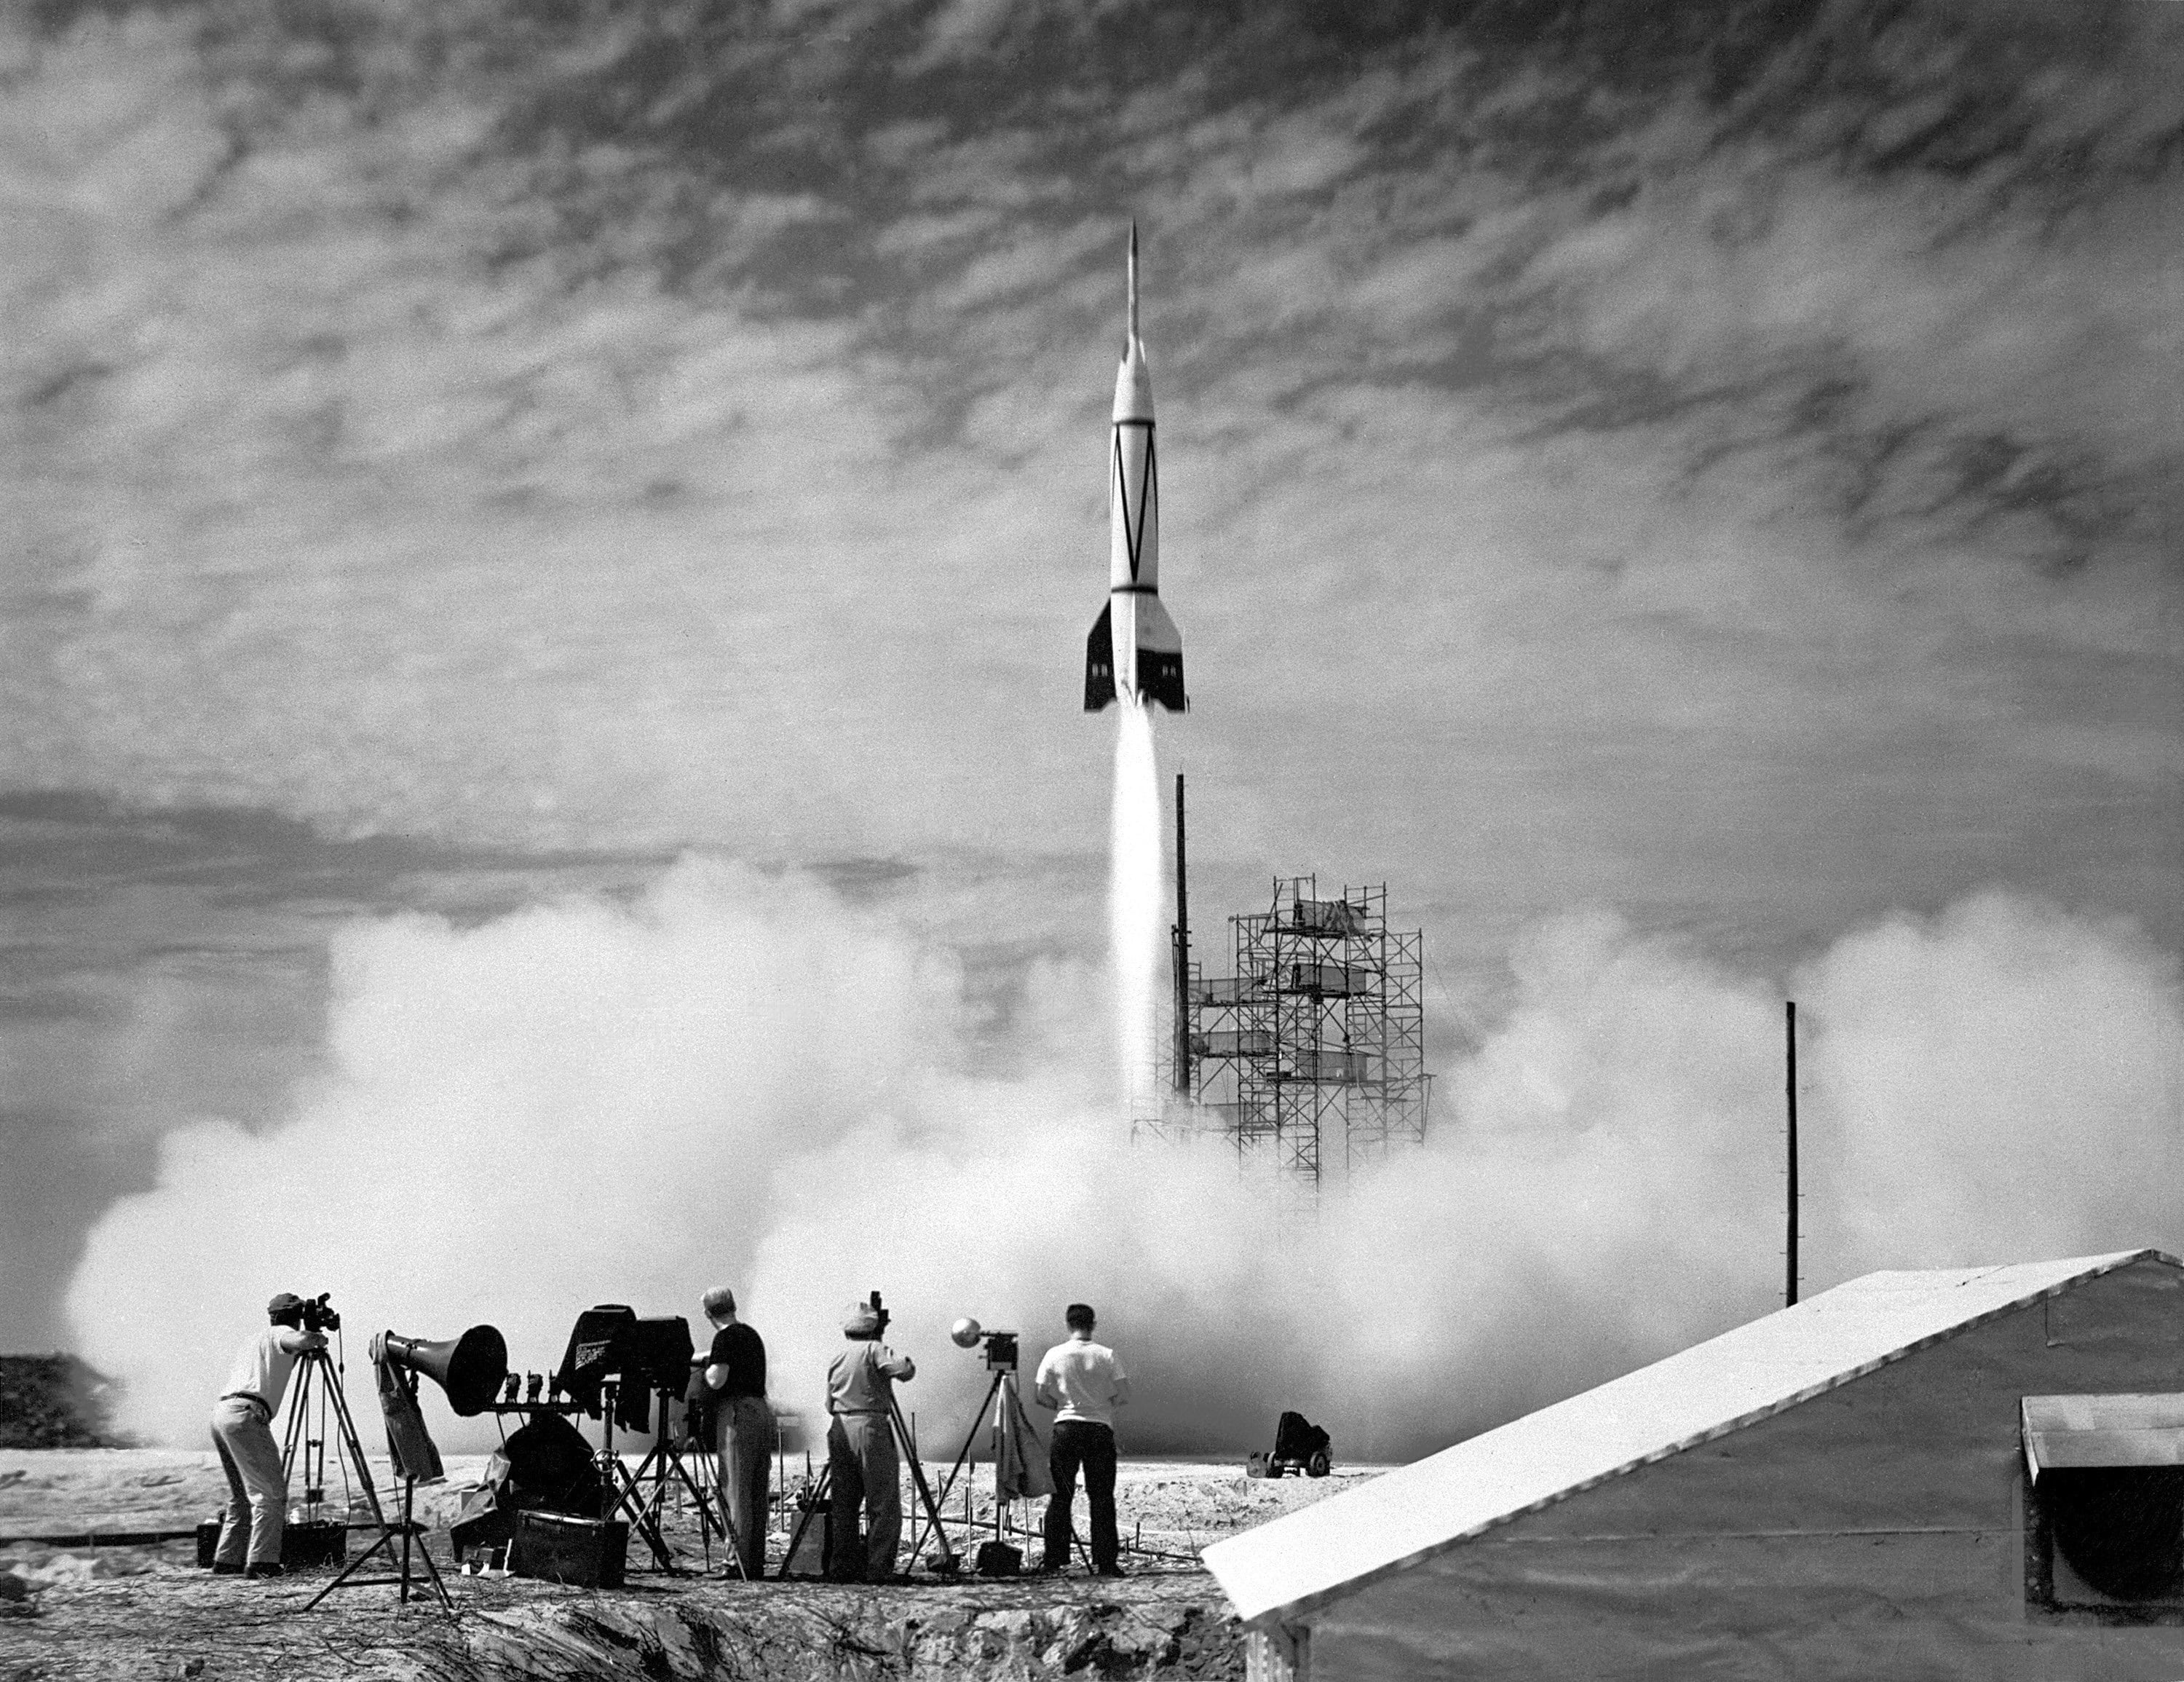 Primo missile lanciato dagli americani il 24 luglio 1950, a Cape Canaveral